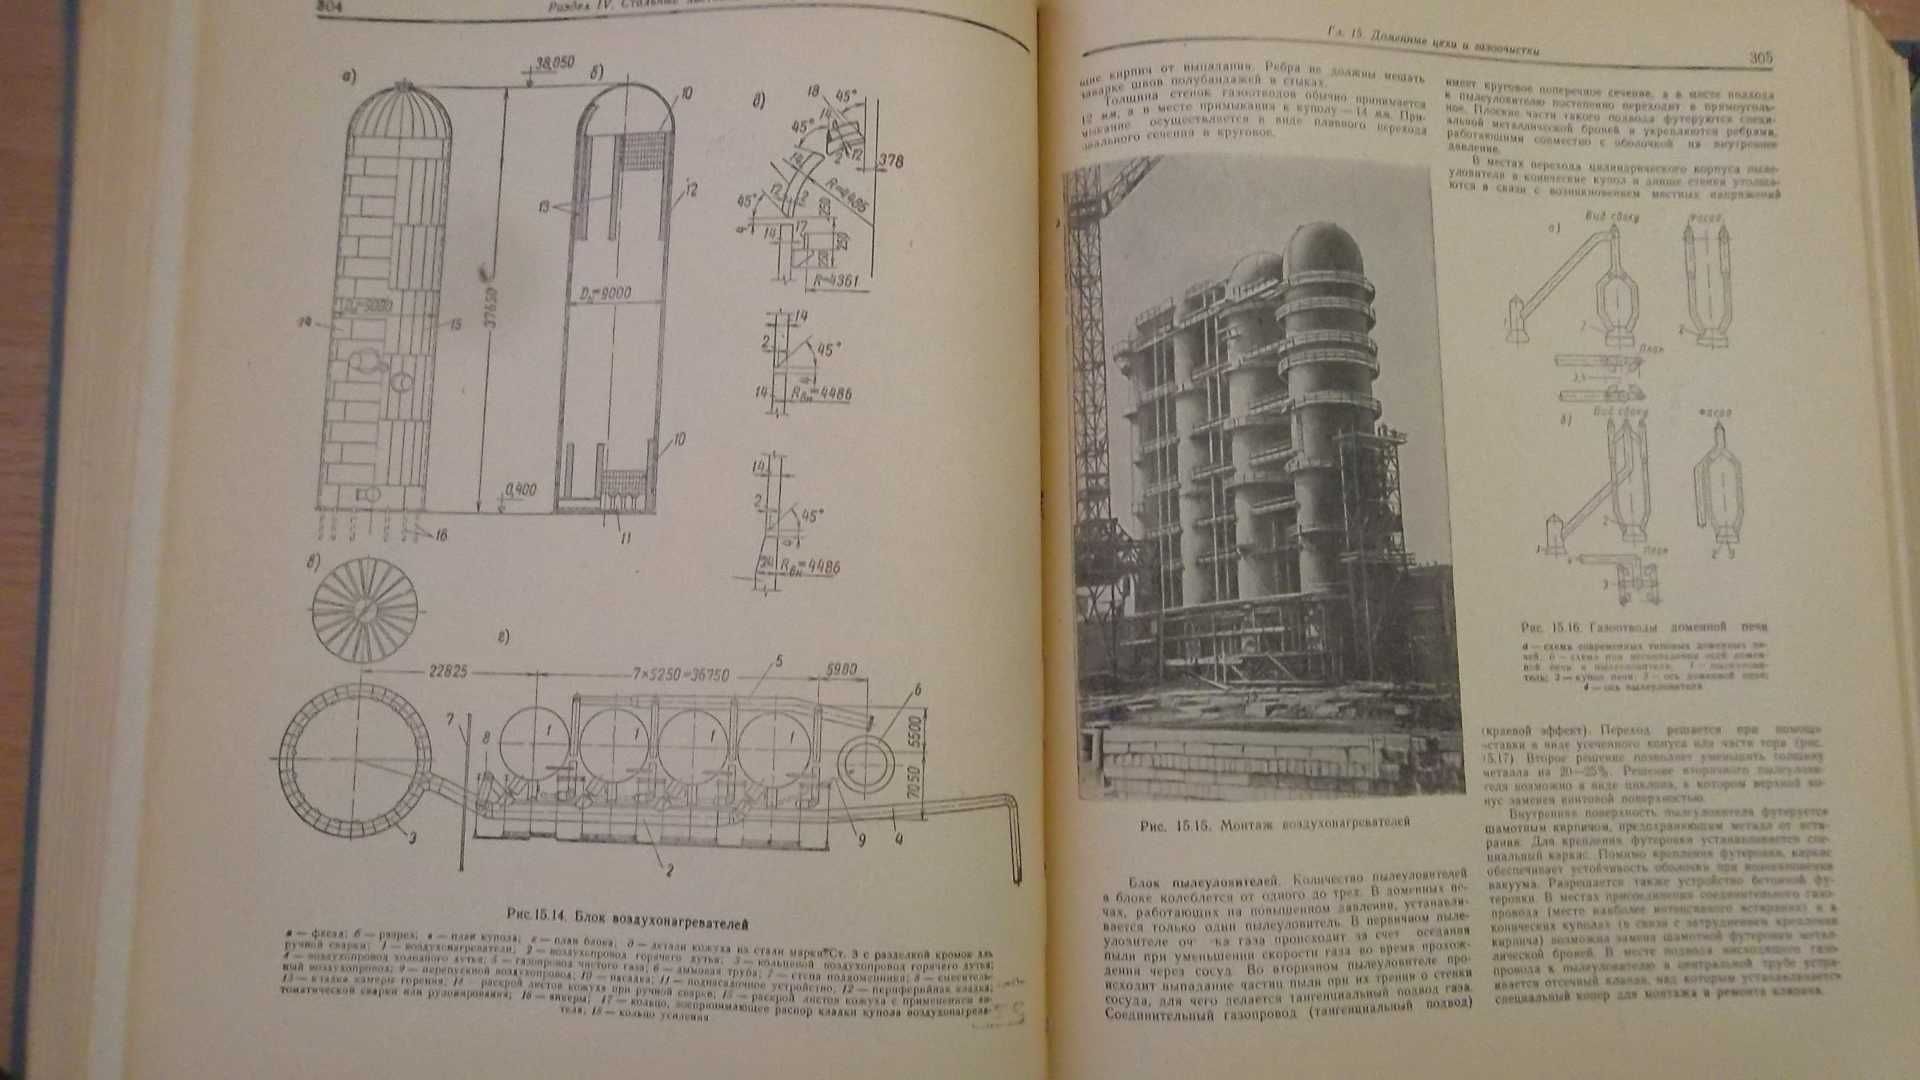 Справочник проектировщика Металлические конструкции 1962